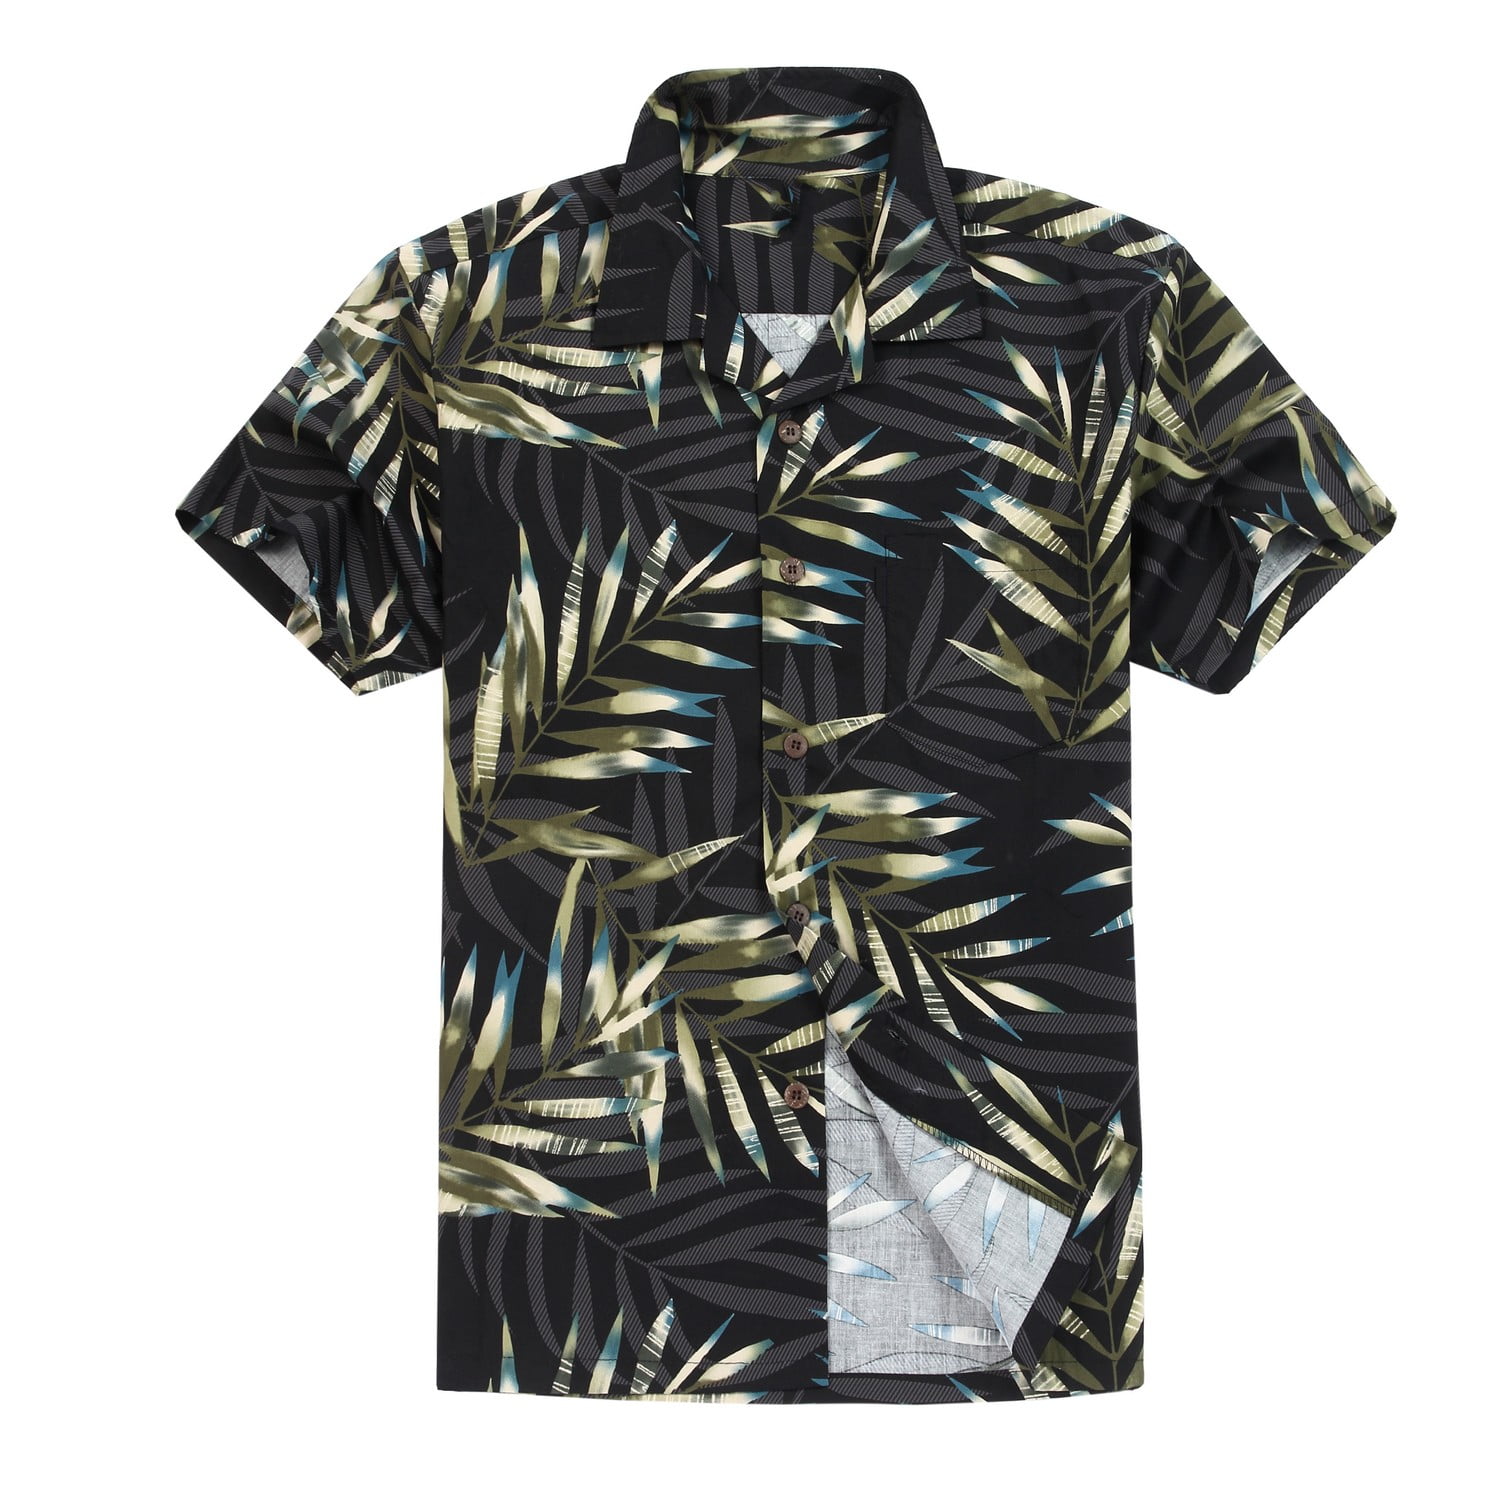 Buy Couple Matching Hawaiian Luau Outfit Aloha Shirt Tank Dress in ...